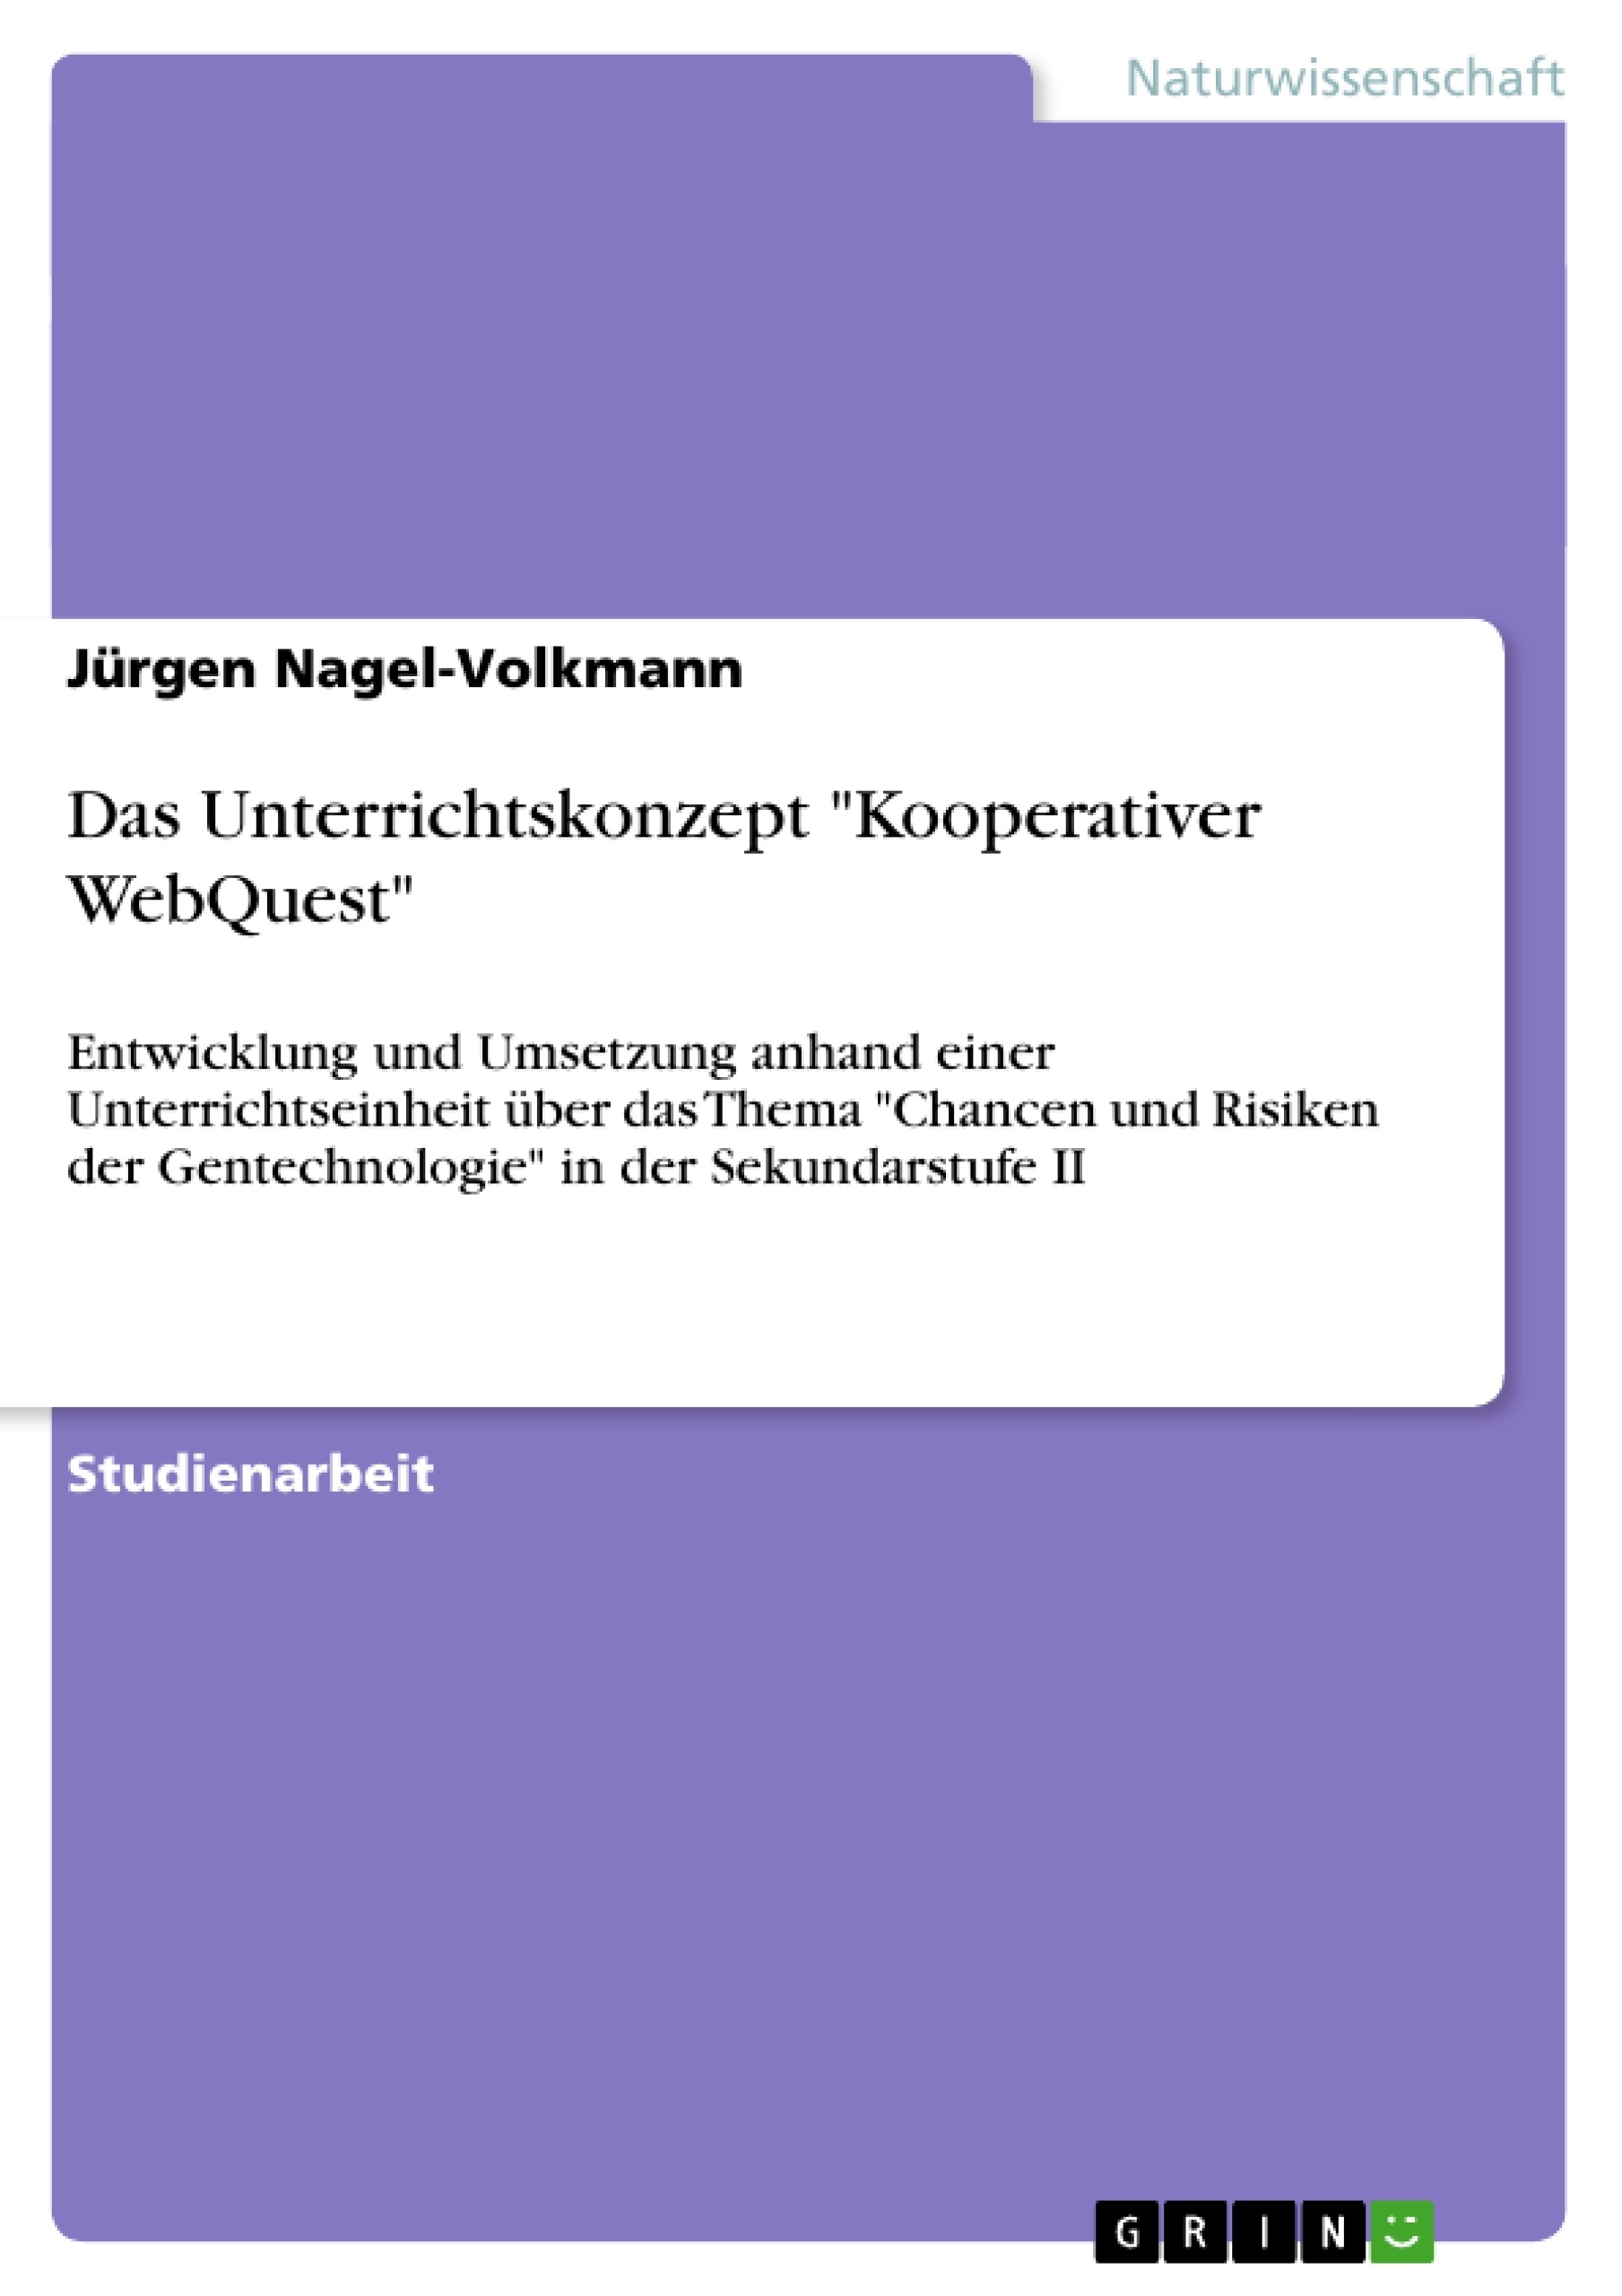 Title: Das Unterrichtskonzept "Kooperativer WebQuest"